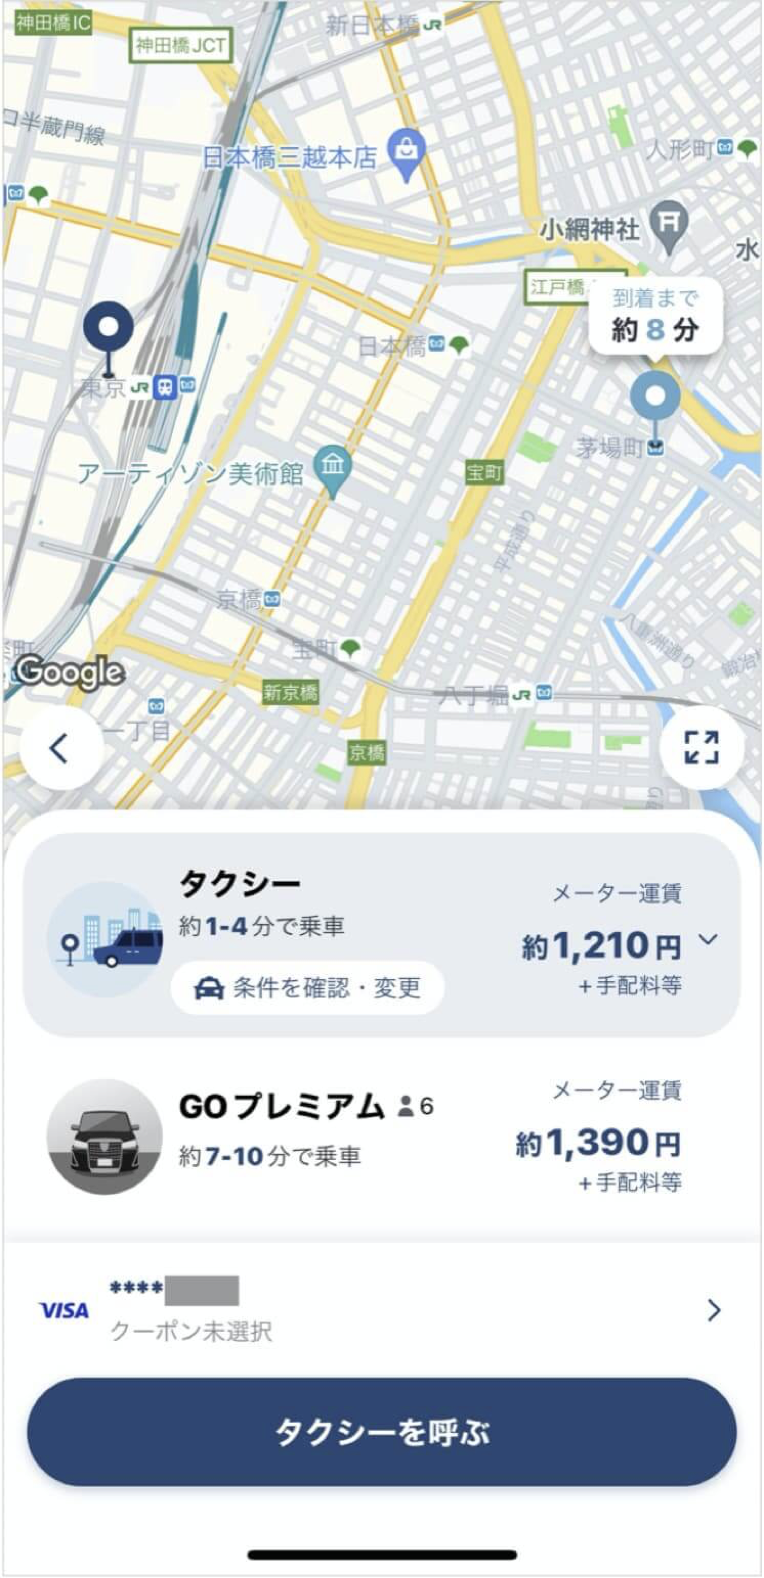 東京駅から茅場町までのタクシー料金・所要時間まとめ